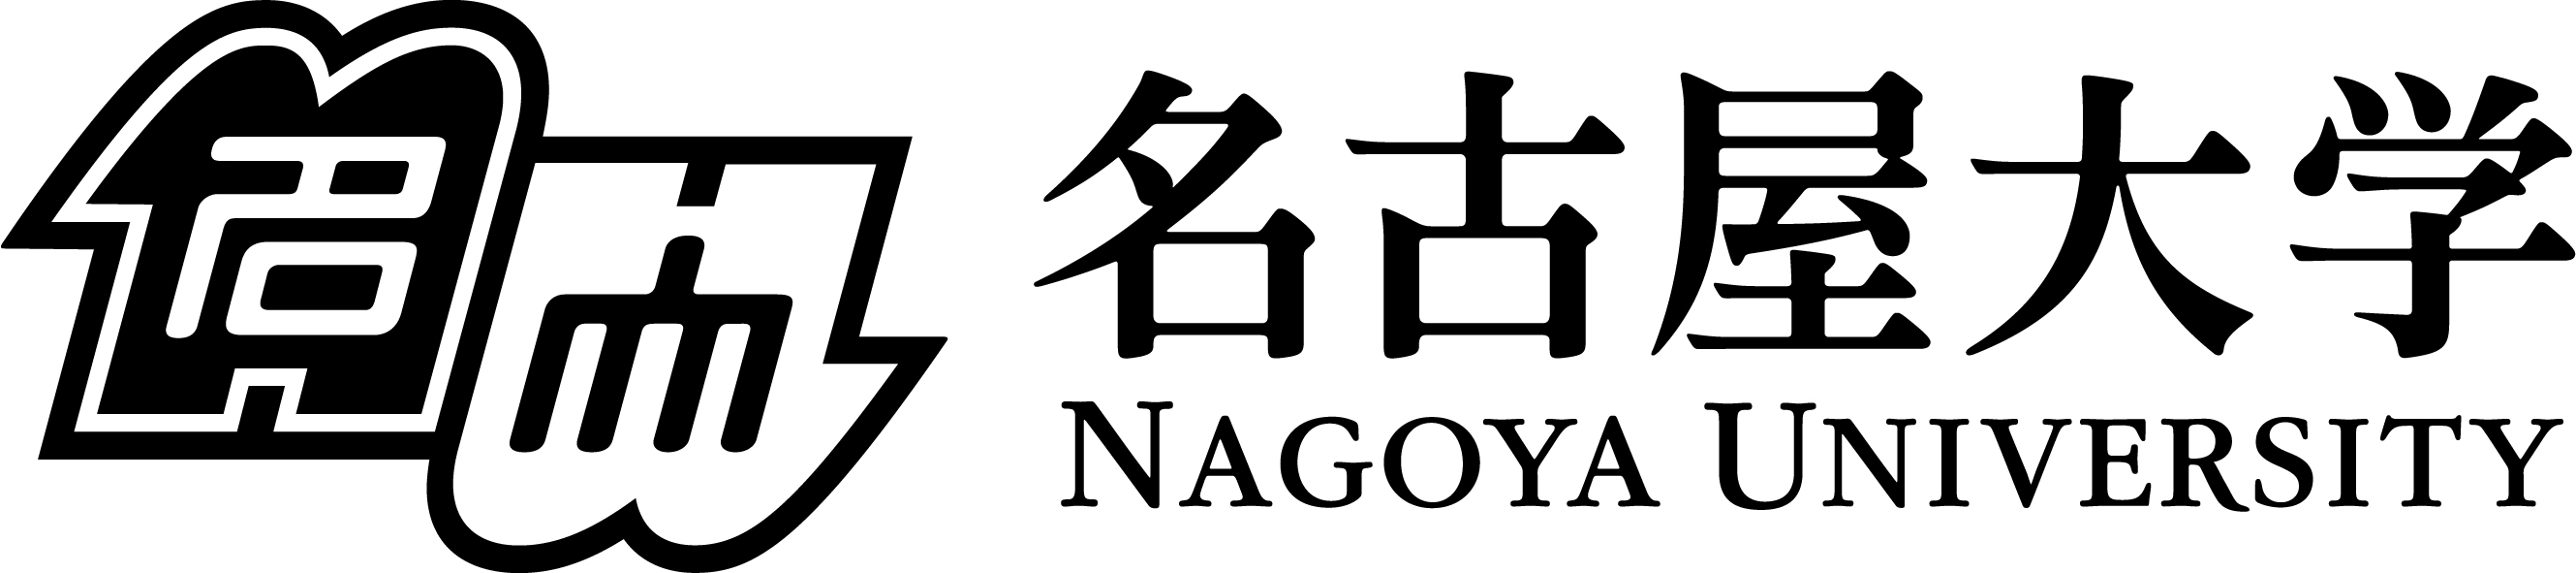 nagoya_1.jpg